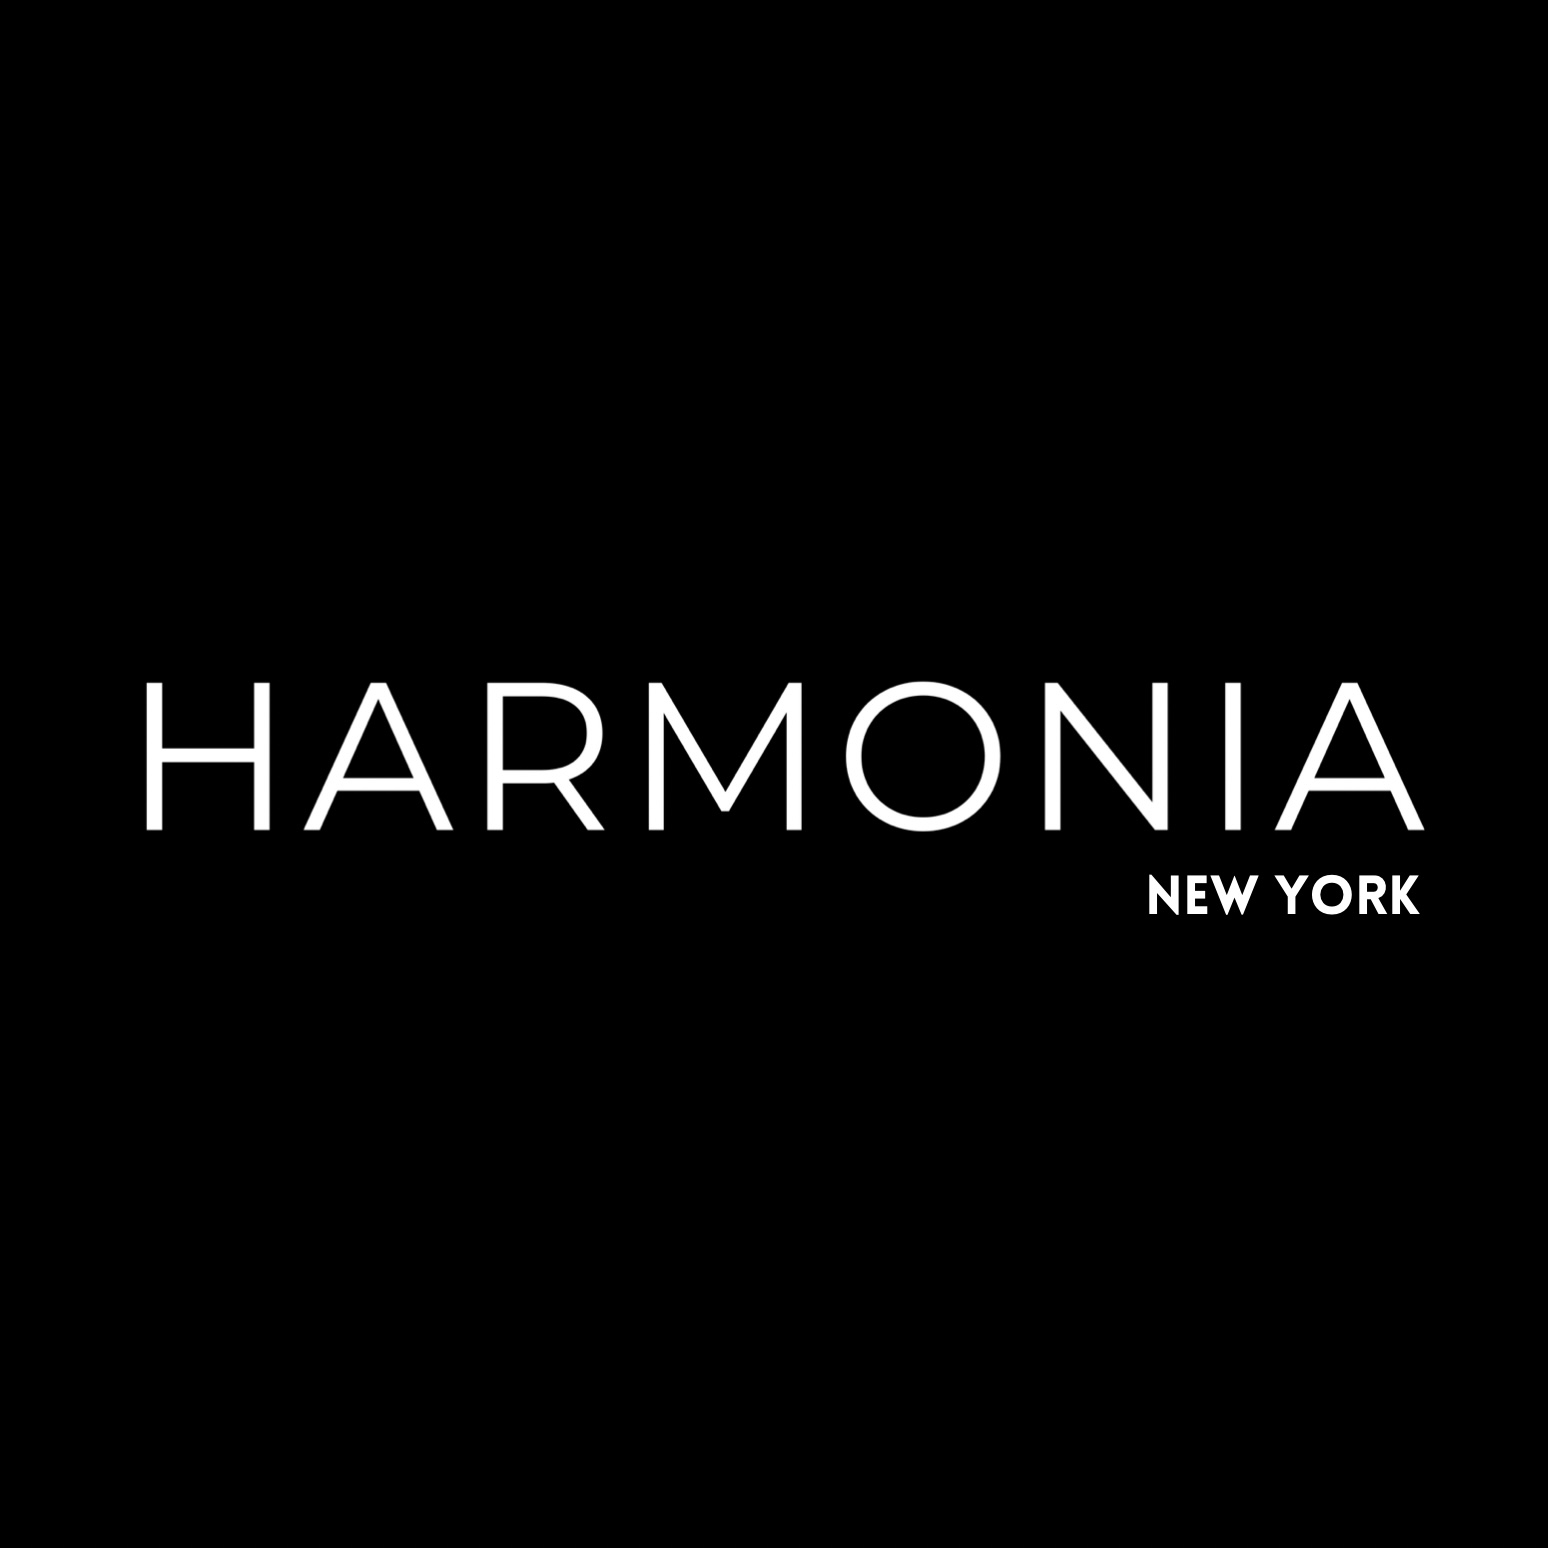 HARMONIA_NY Collection